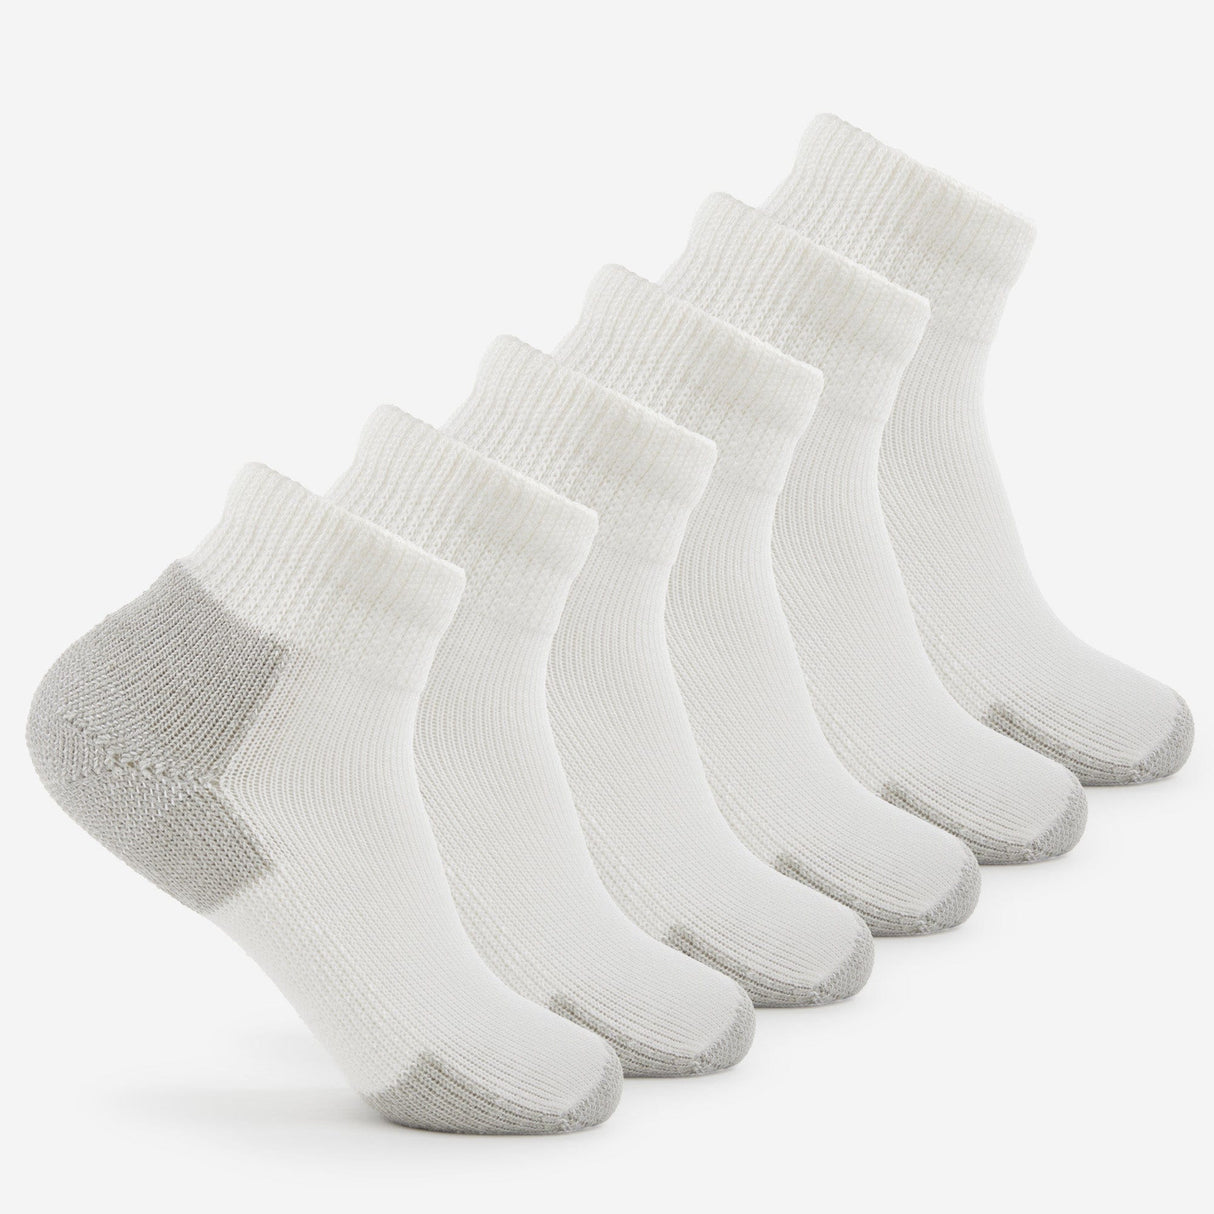 Thorlo Running Foot Protection Heavy Cushion Mini Crew Socks  -  Medium / White/Platinum / 6-Pair Pack